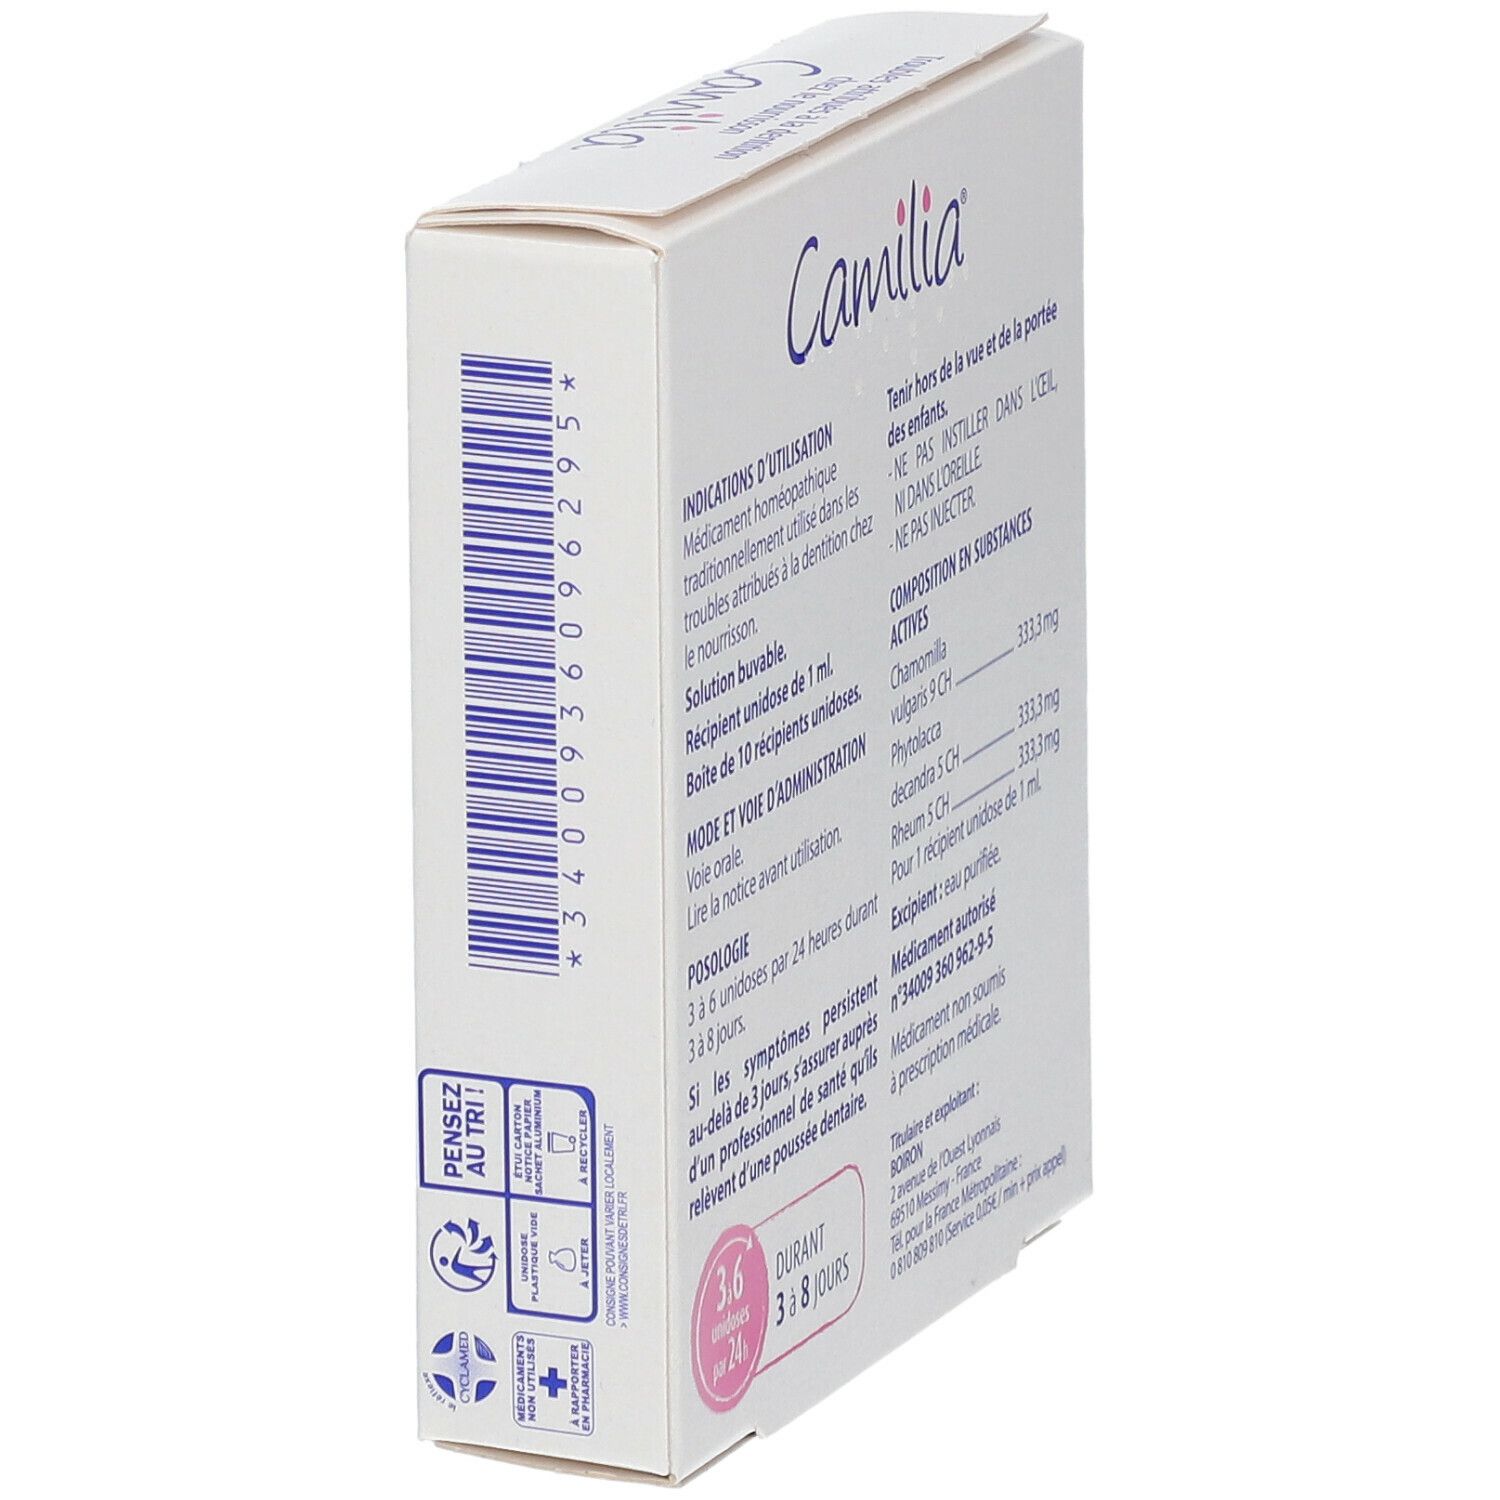 Camilia solution buvable en récipient unidose Boiron - 10 unidoses de 1 ml